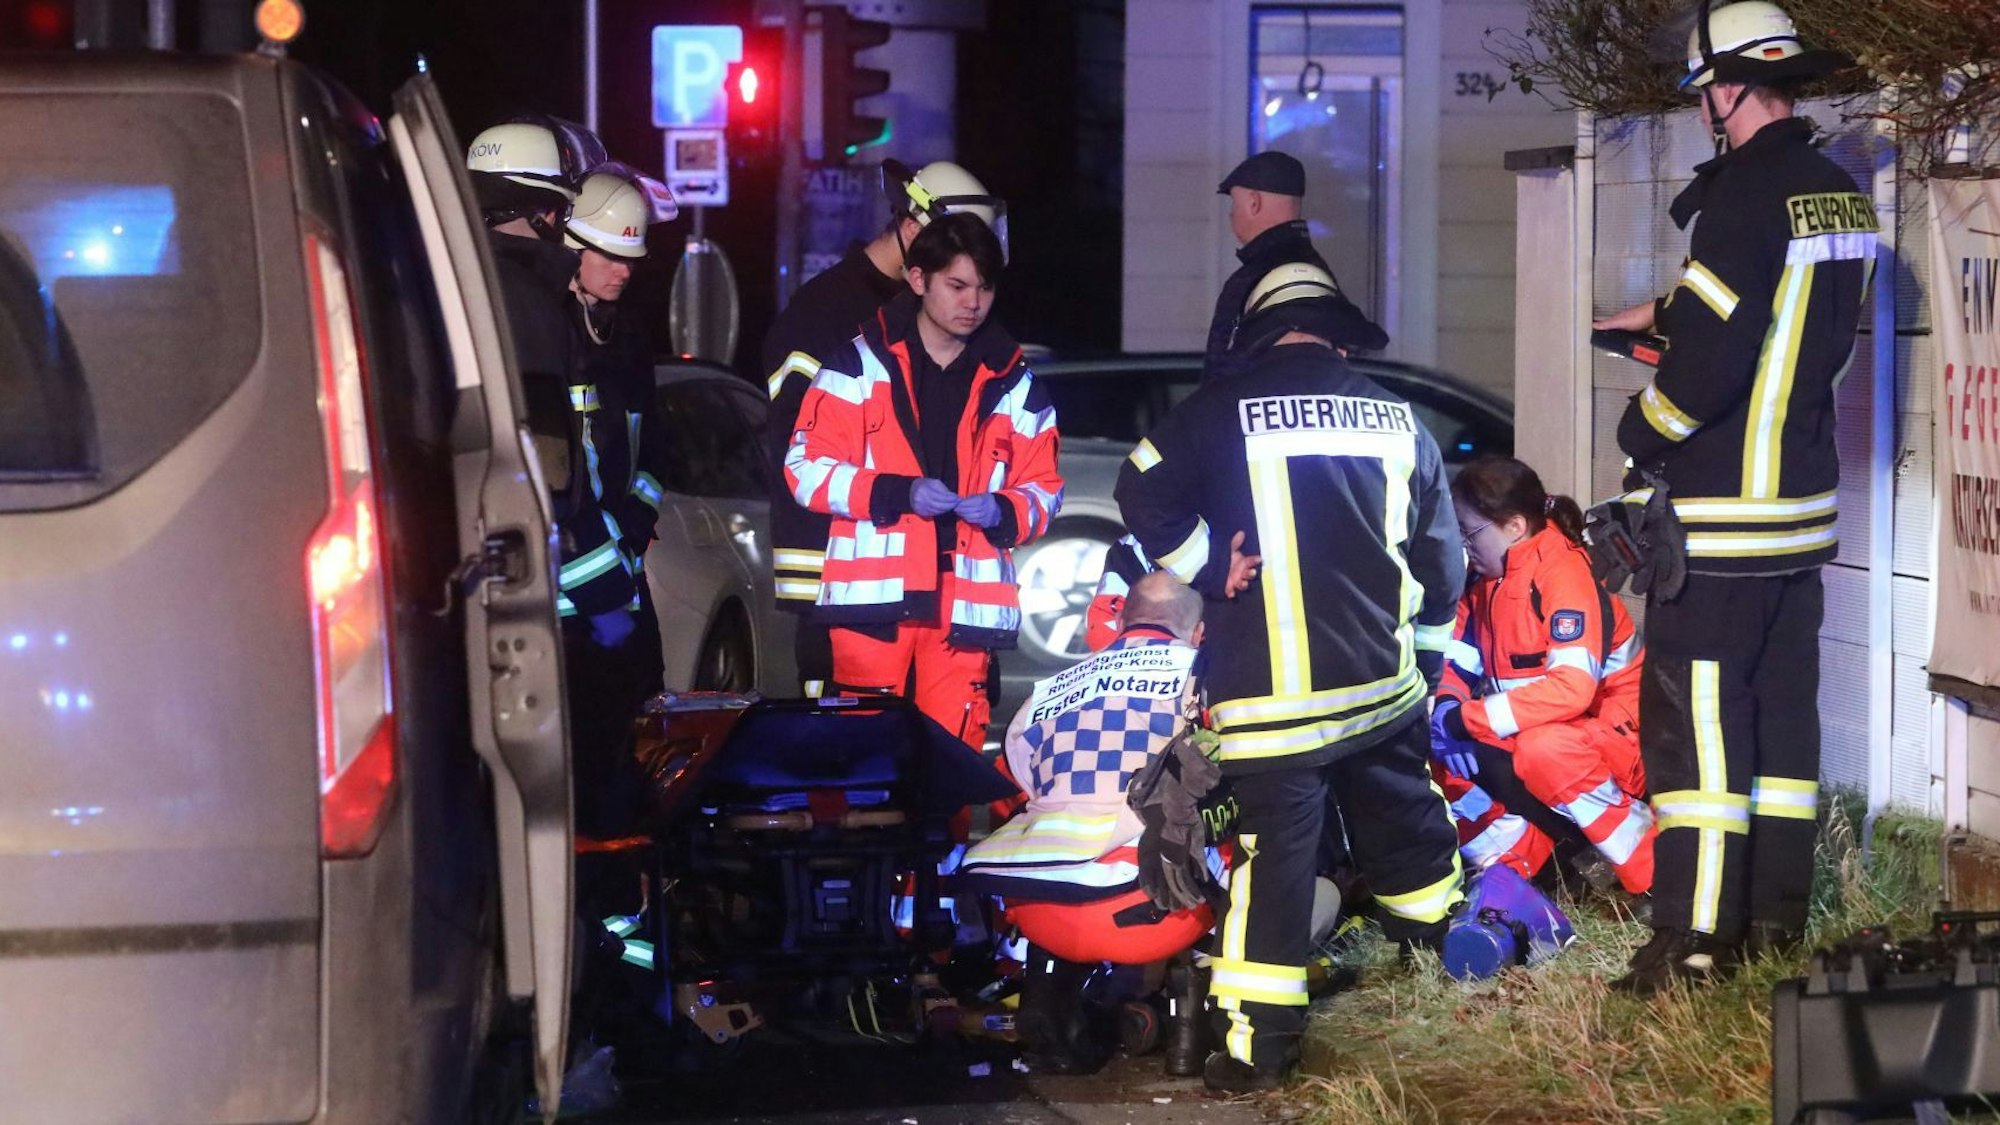 Rettungssanitäter und ein Notarzt beugen sich über einen Verletzten, Feuerwehrleute schauen bei dem Einsatz zu.